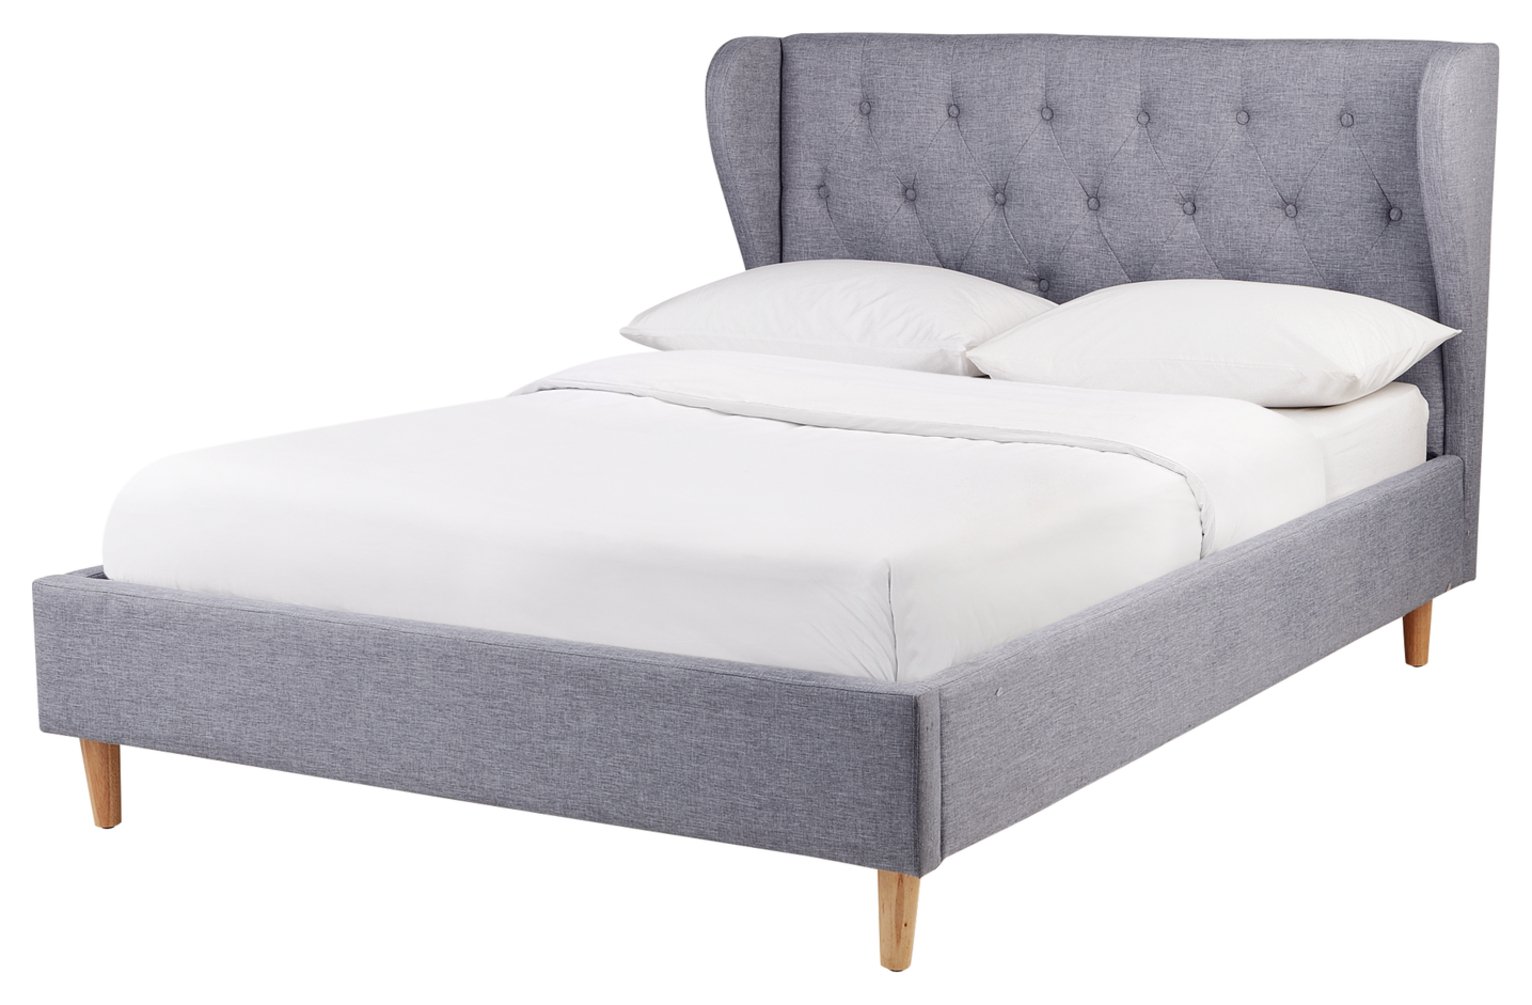 Argos Home Condor Double Fabric Bed Frame - Grey